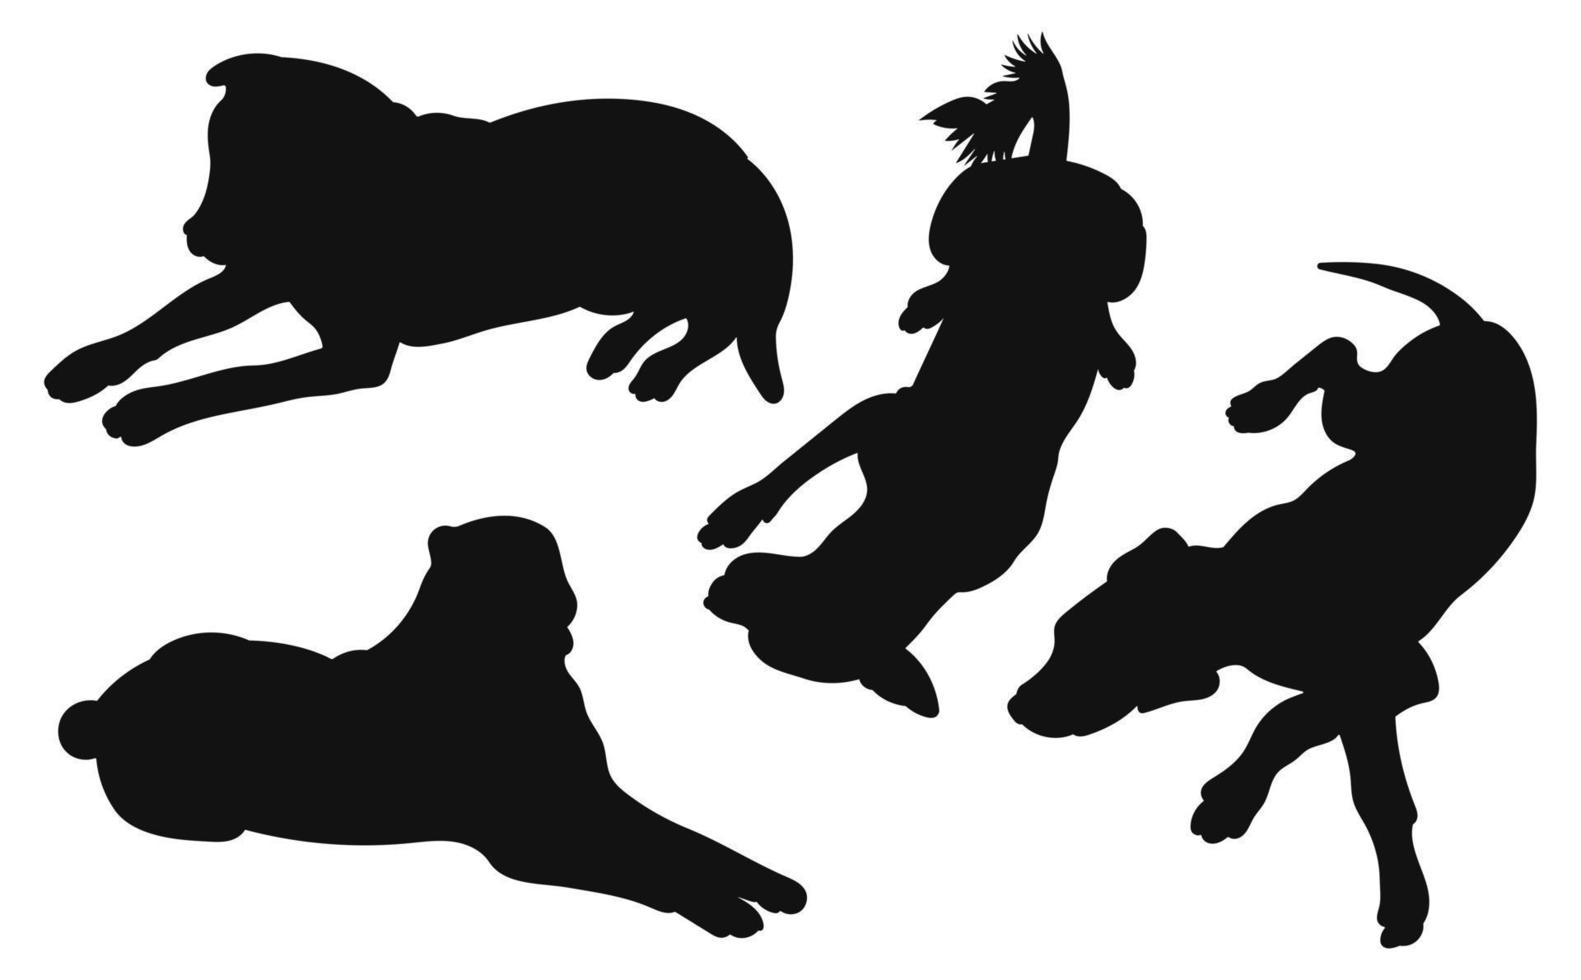 ensemble de silhouettes noires de chiens couchés, position de mensonge, paquet de formes et de figures d'animaux de compagnie dessinés à la main, vecteur isolé